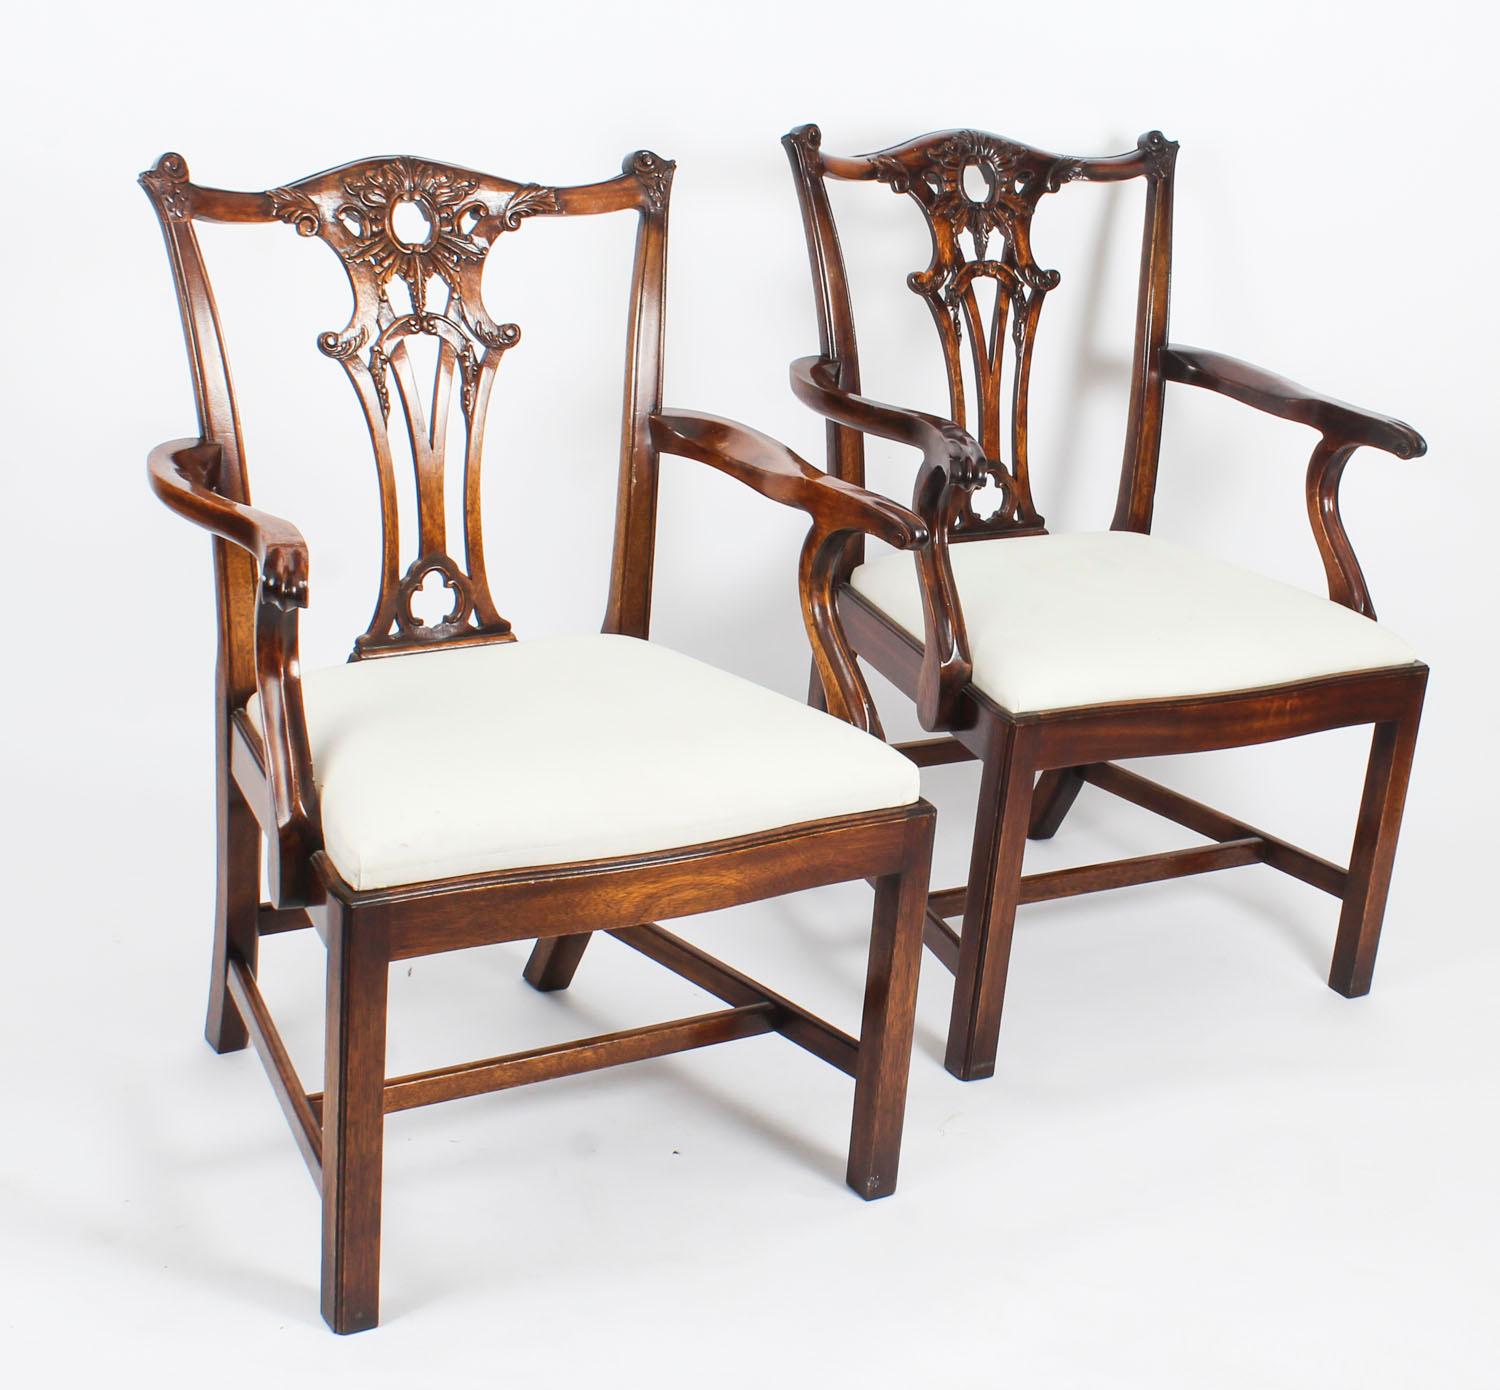 Ein wunderschönes Paar geschnitzte offene Sessel aus Mahagoni im Chippendale-Stil aus der Mitte des 20. Jahrhunderts.

Sie wurden aus massivem Mahagoniholz handgeschnitzt, haben eine durchbrochene Rückenlehne, versenkbare Sitze und stehen auf